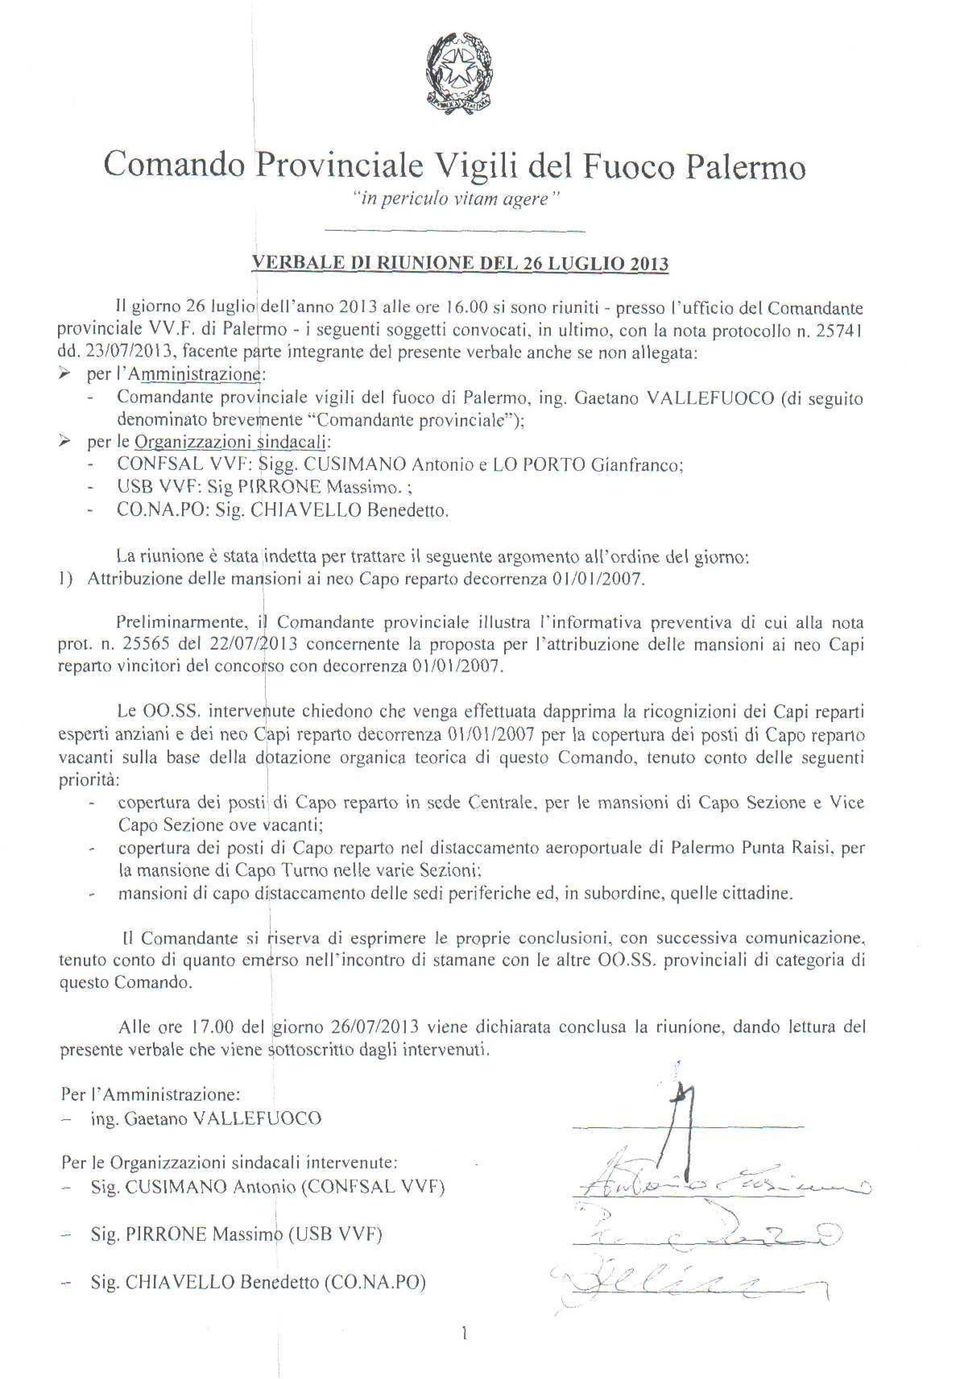 23/07/2013, facente parte integrante del presente verbale anche se non allegata: > per ramminislraziond: Comandante provinciale vigili del fuoco di Palermo, ing.